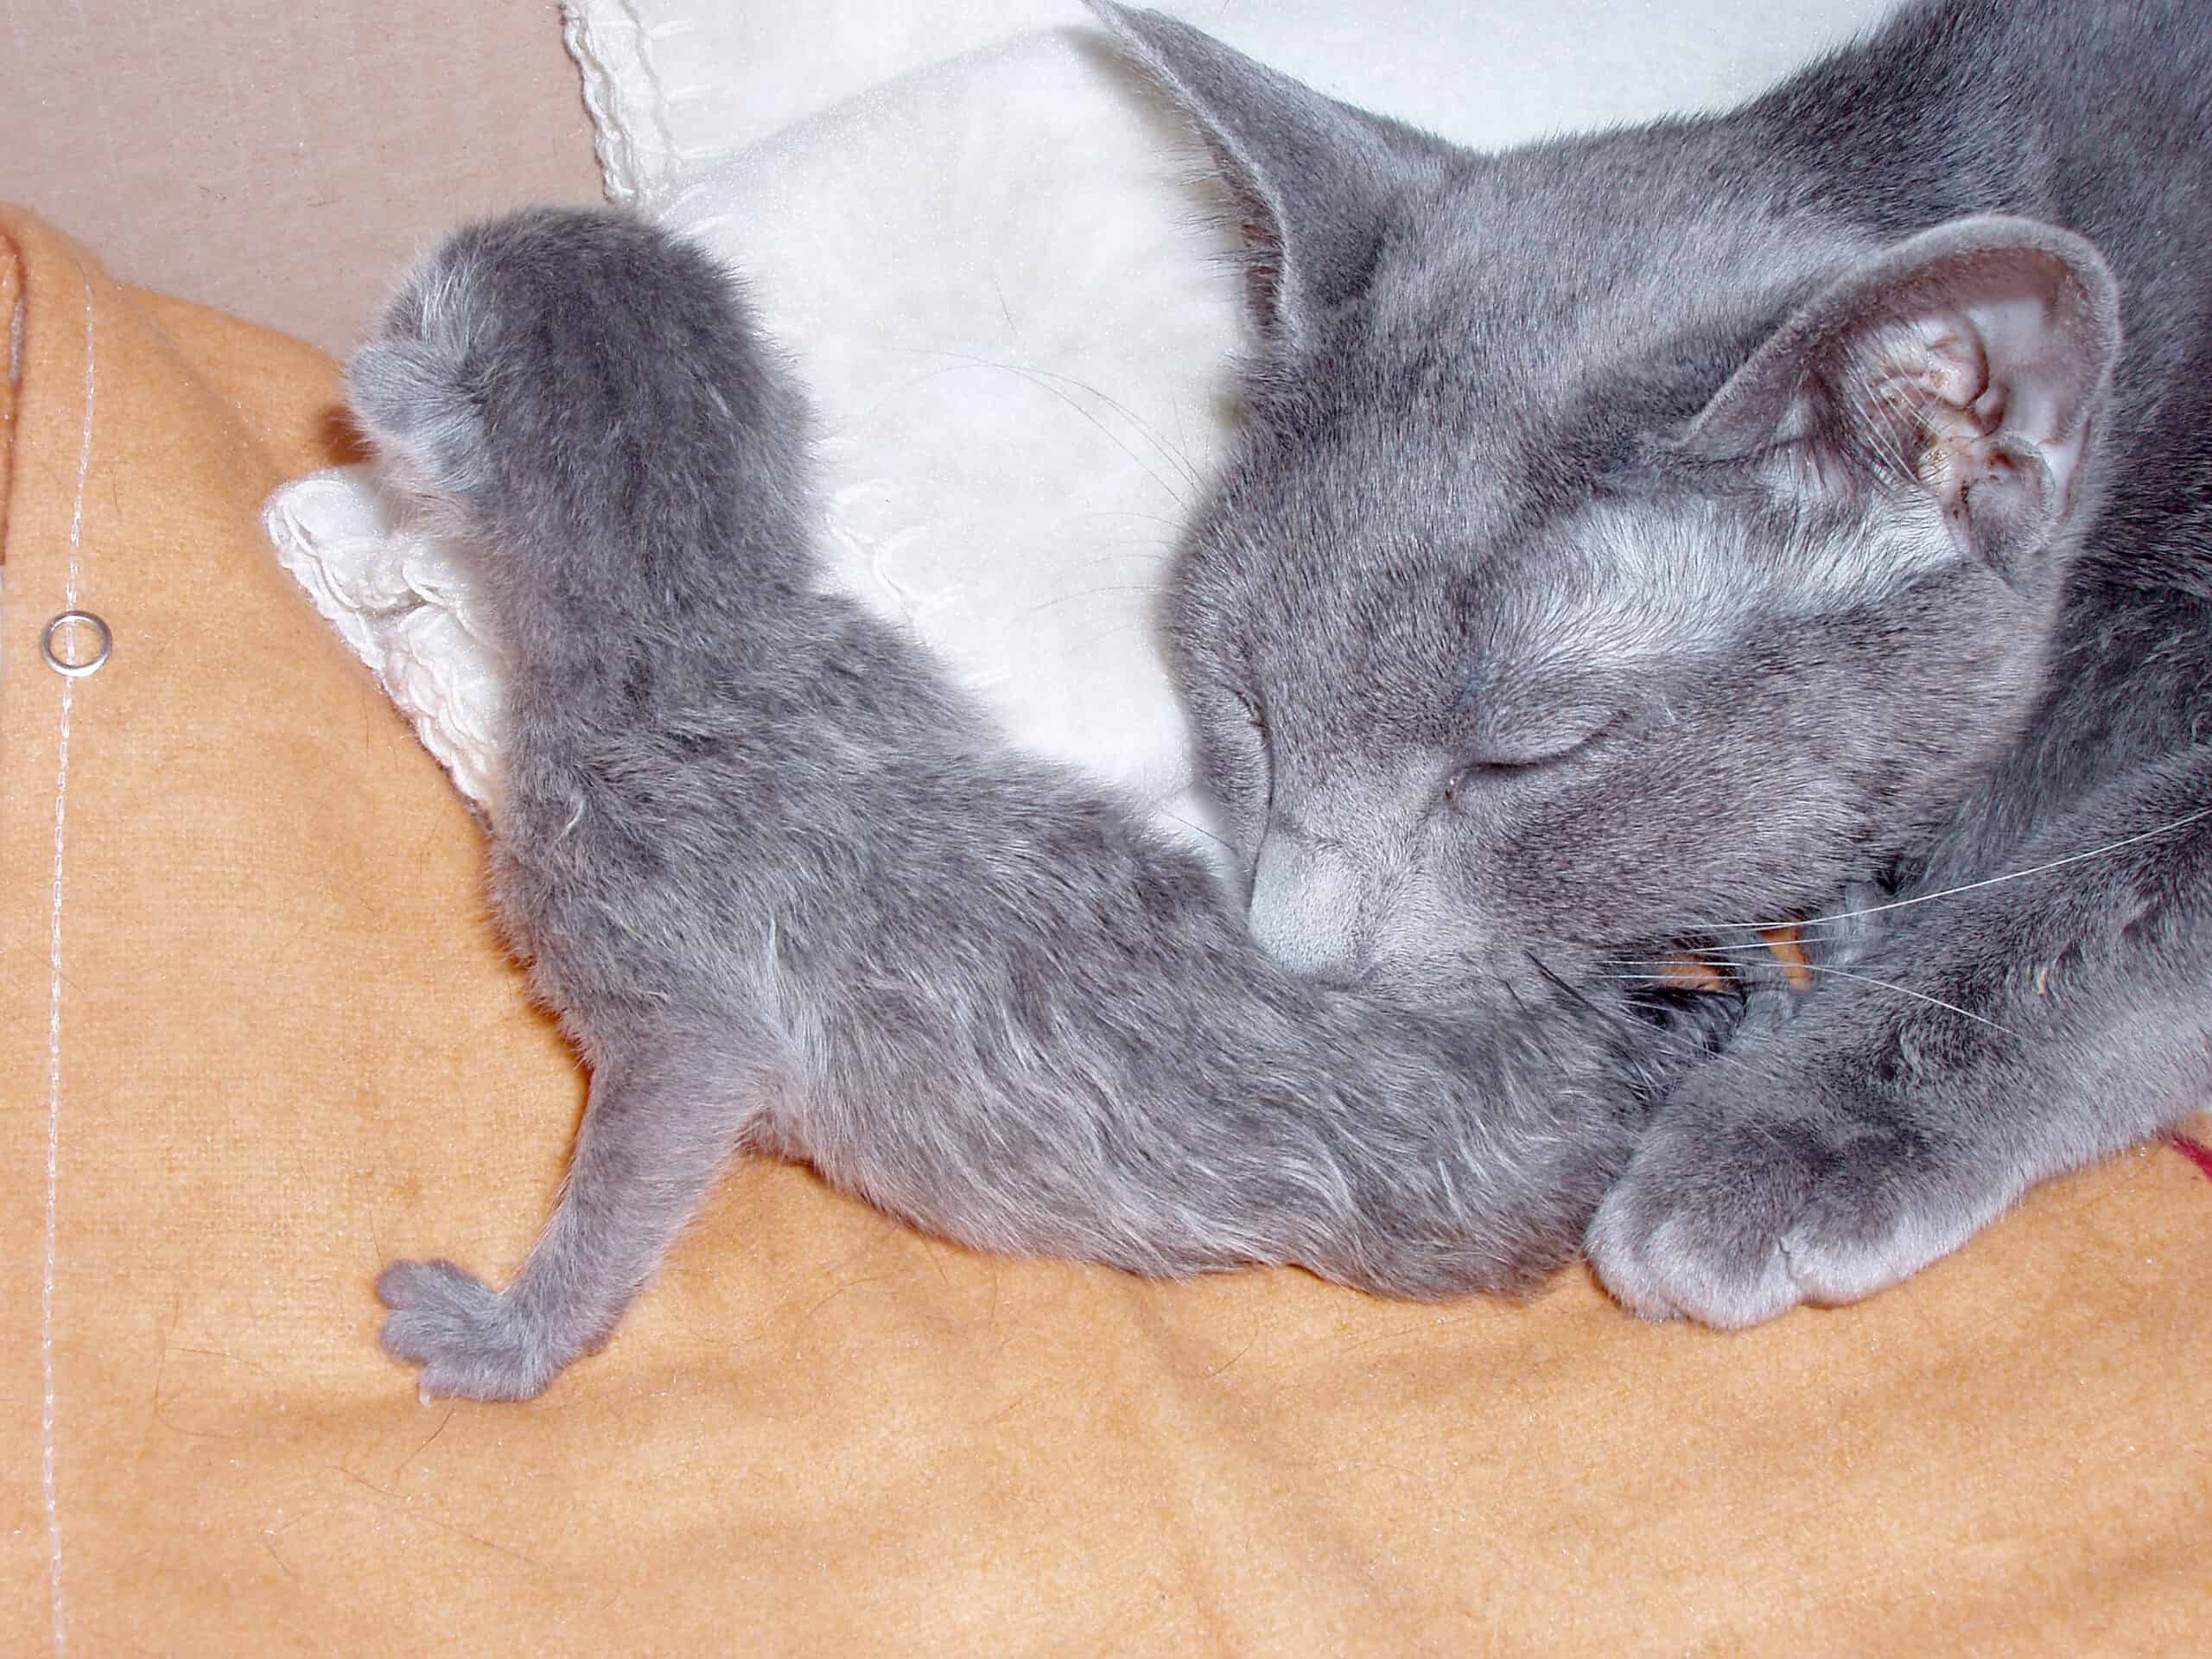 Russian Blue kattmamma slickar sin kattunge. Man ser kattmammans huvud och framtassar när hon böjt sig ned för att slicka en liggande kattunge på nedre delen av ryggen. De är på ett ljust trägolv.